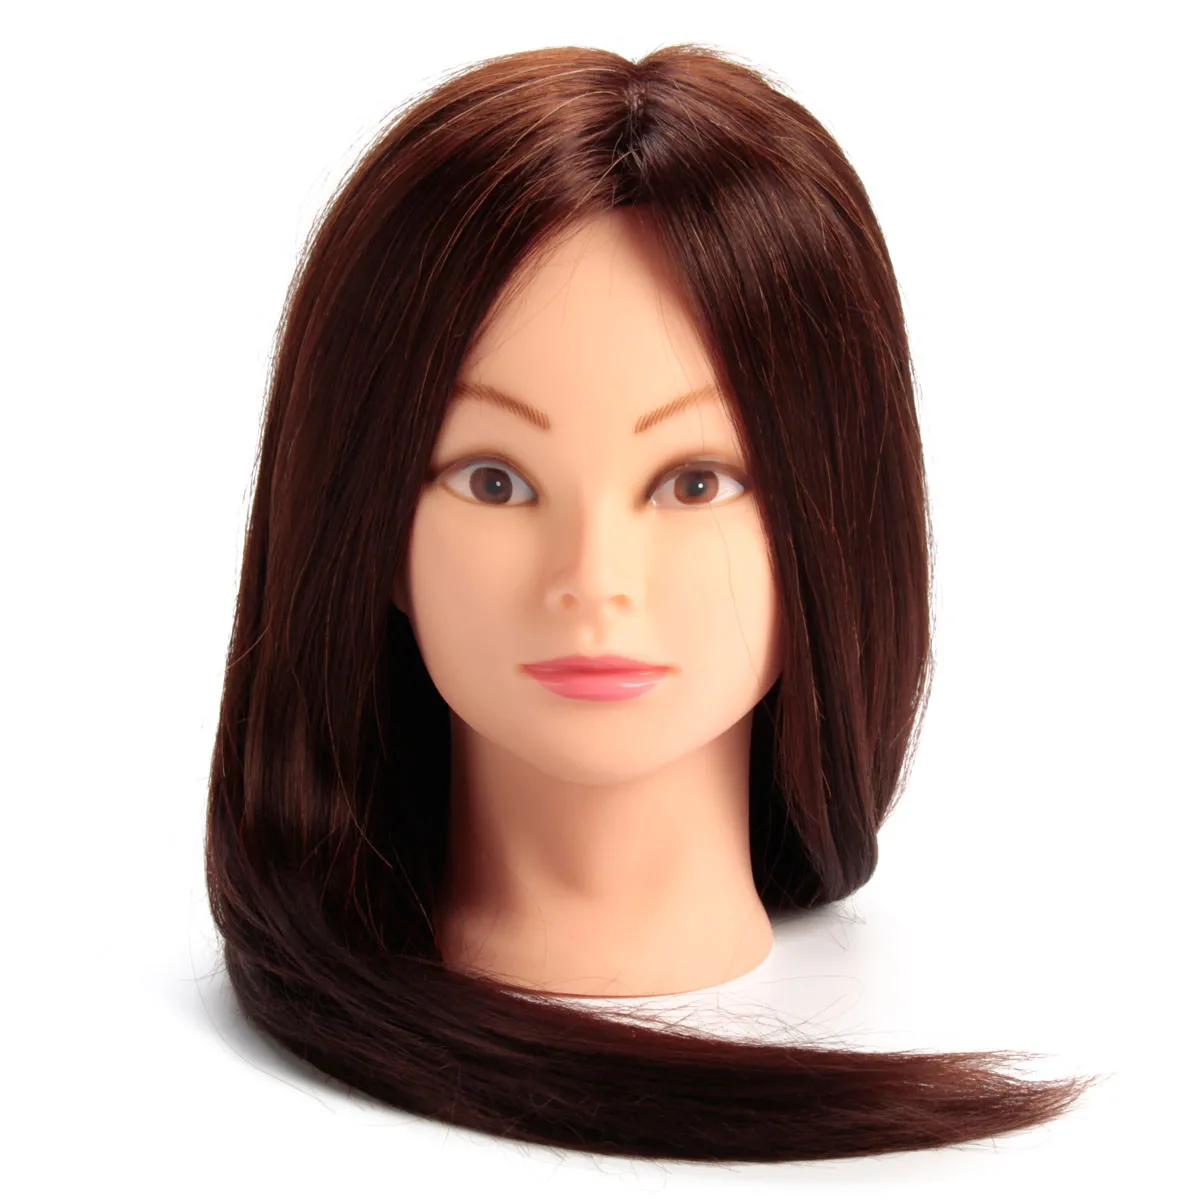 24 inch 30% Реальные Человеческие голова с волосами для тренировки парикмахер парикмахерский манекен с зажимом держатель Для женщин манекен леди